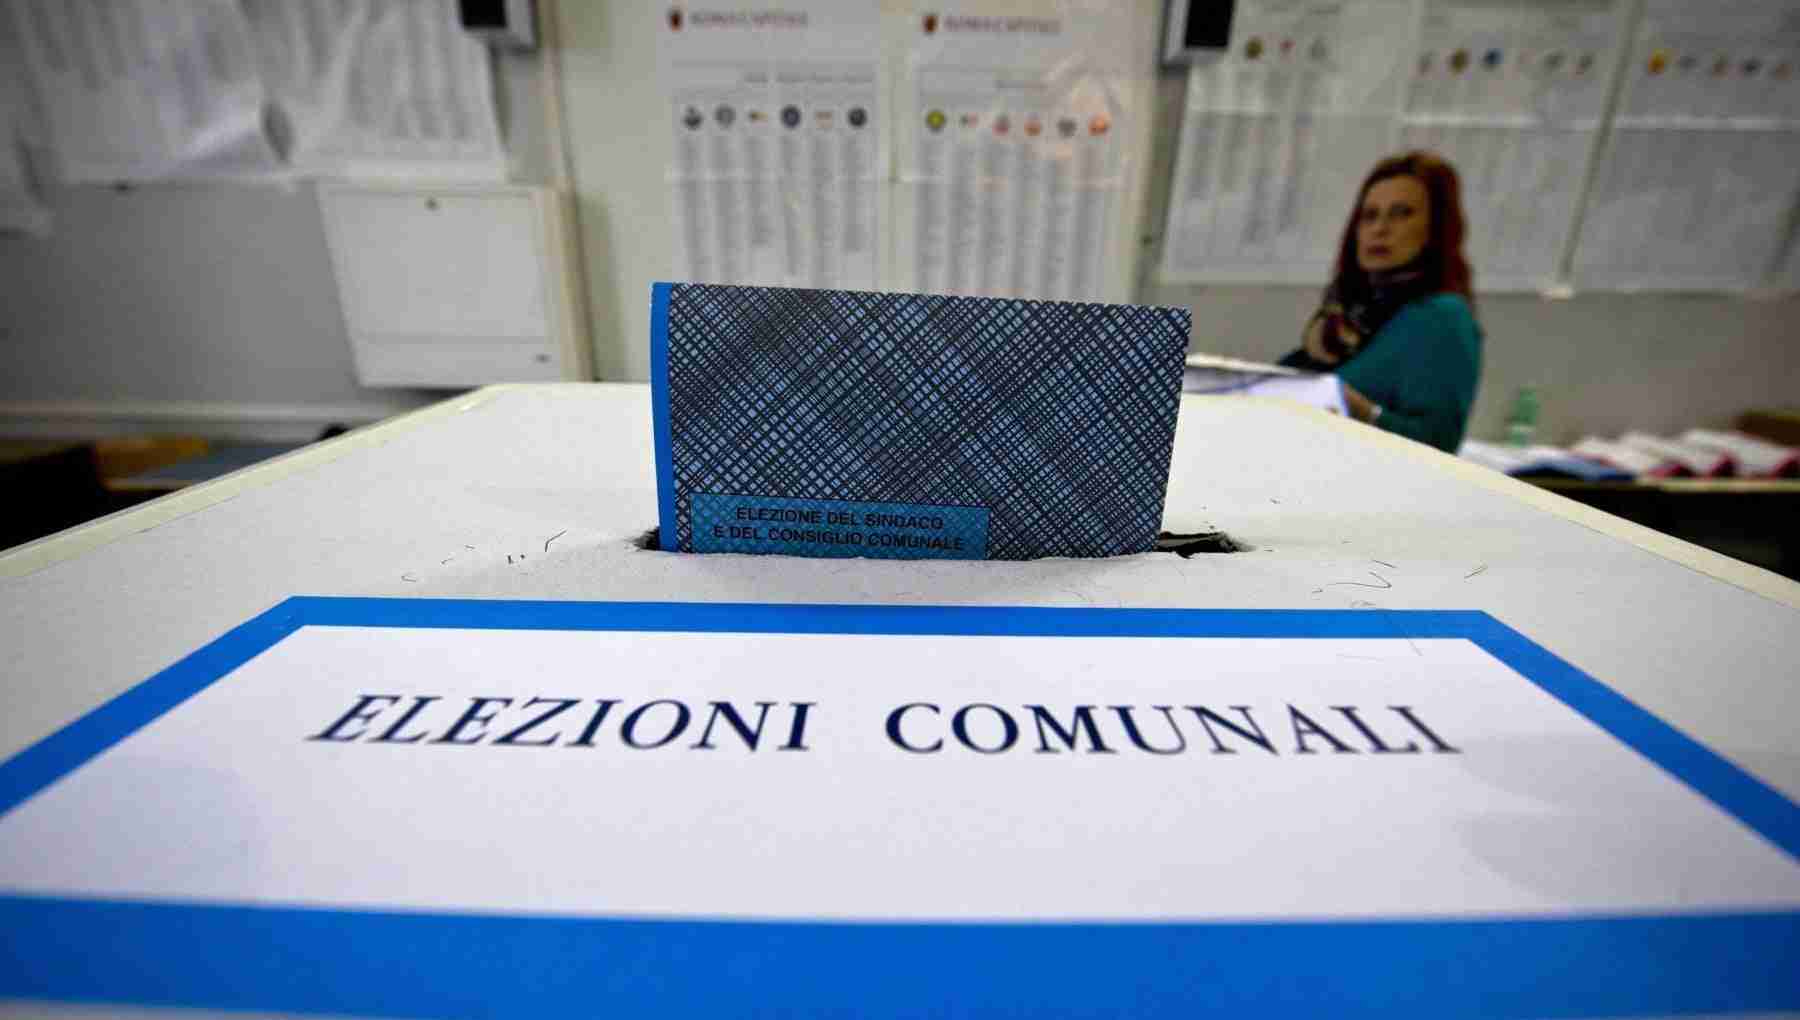 Amministrative in Sicilia, ecco dove si vota